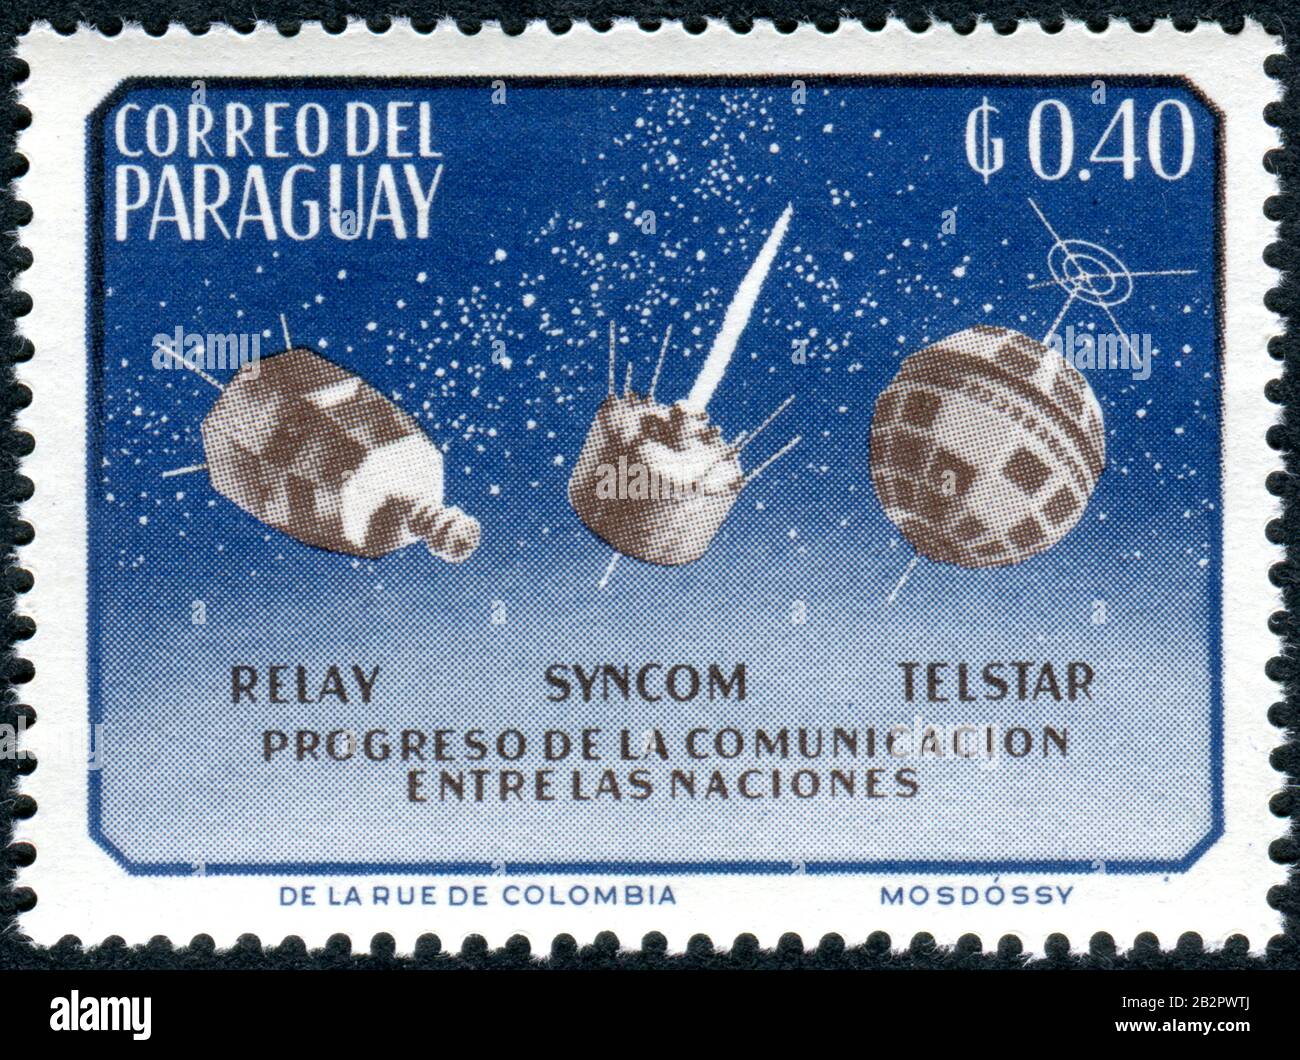 Paraguay - VERS 1964 : un timbre imprimé au Paraguay, dépeint les satellites Relay, Syncom et Telstar, vers 1964 Banque D'Images